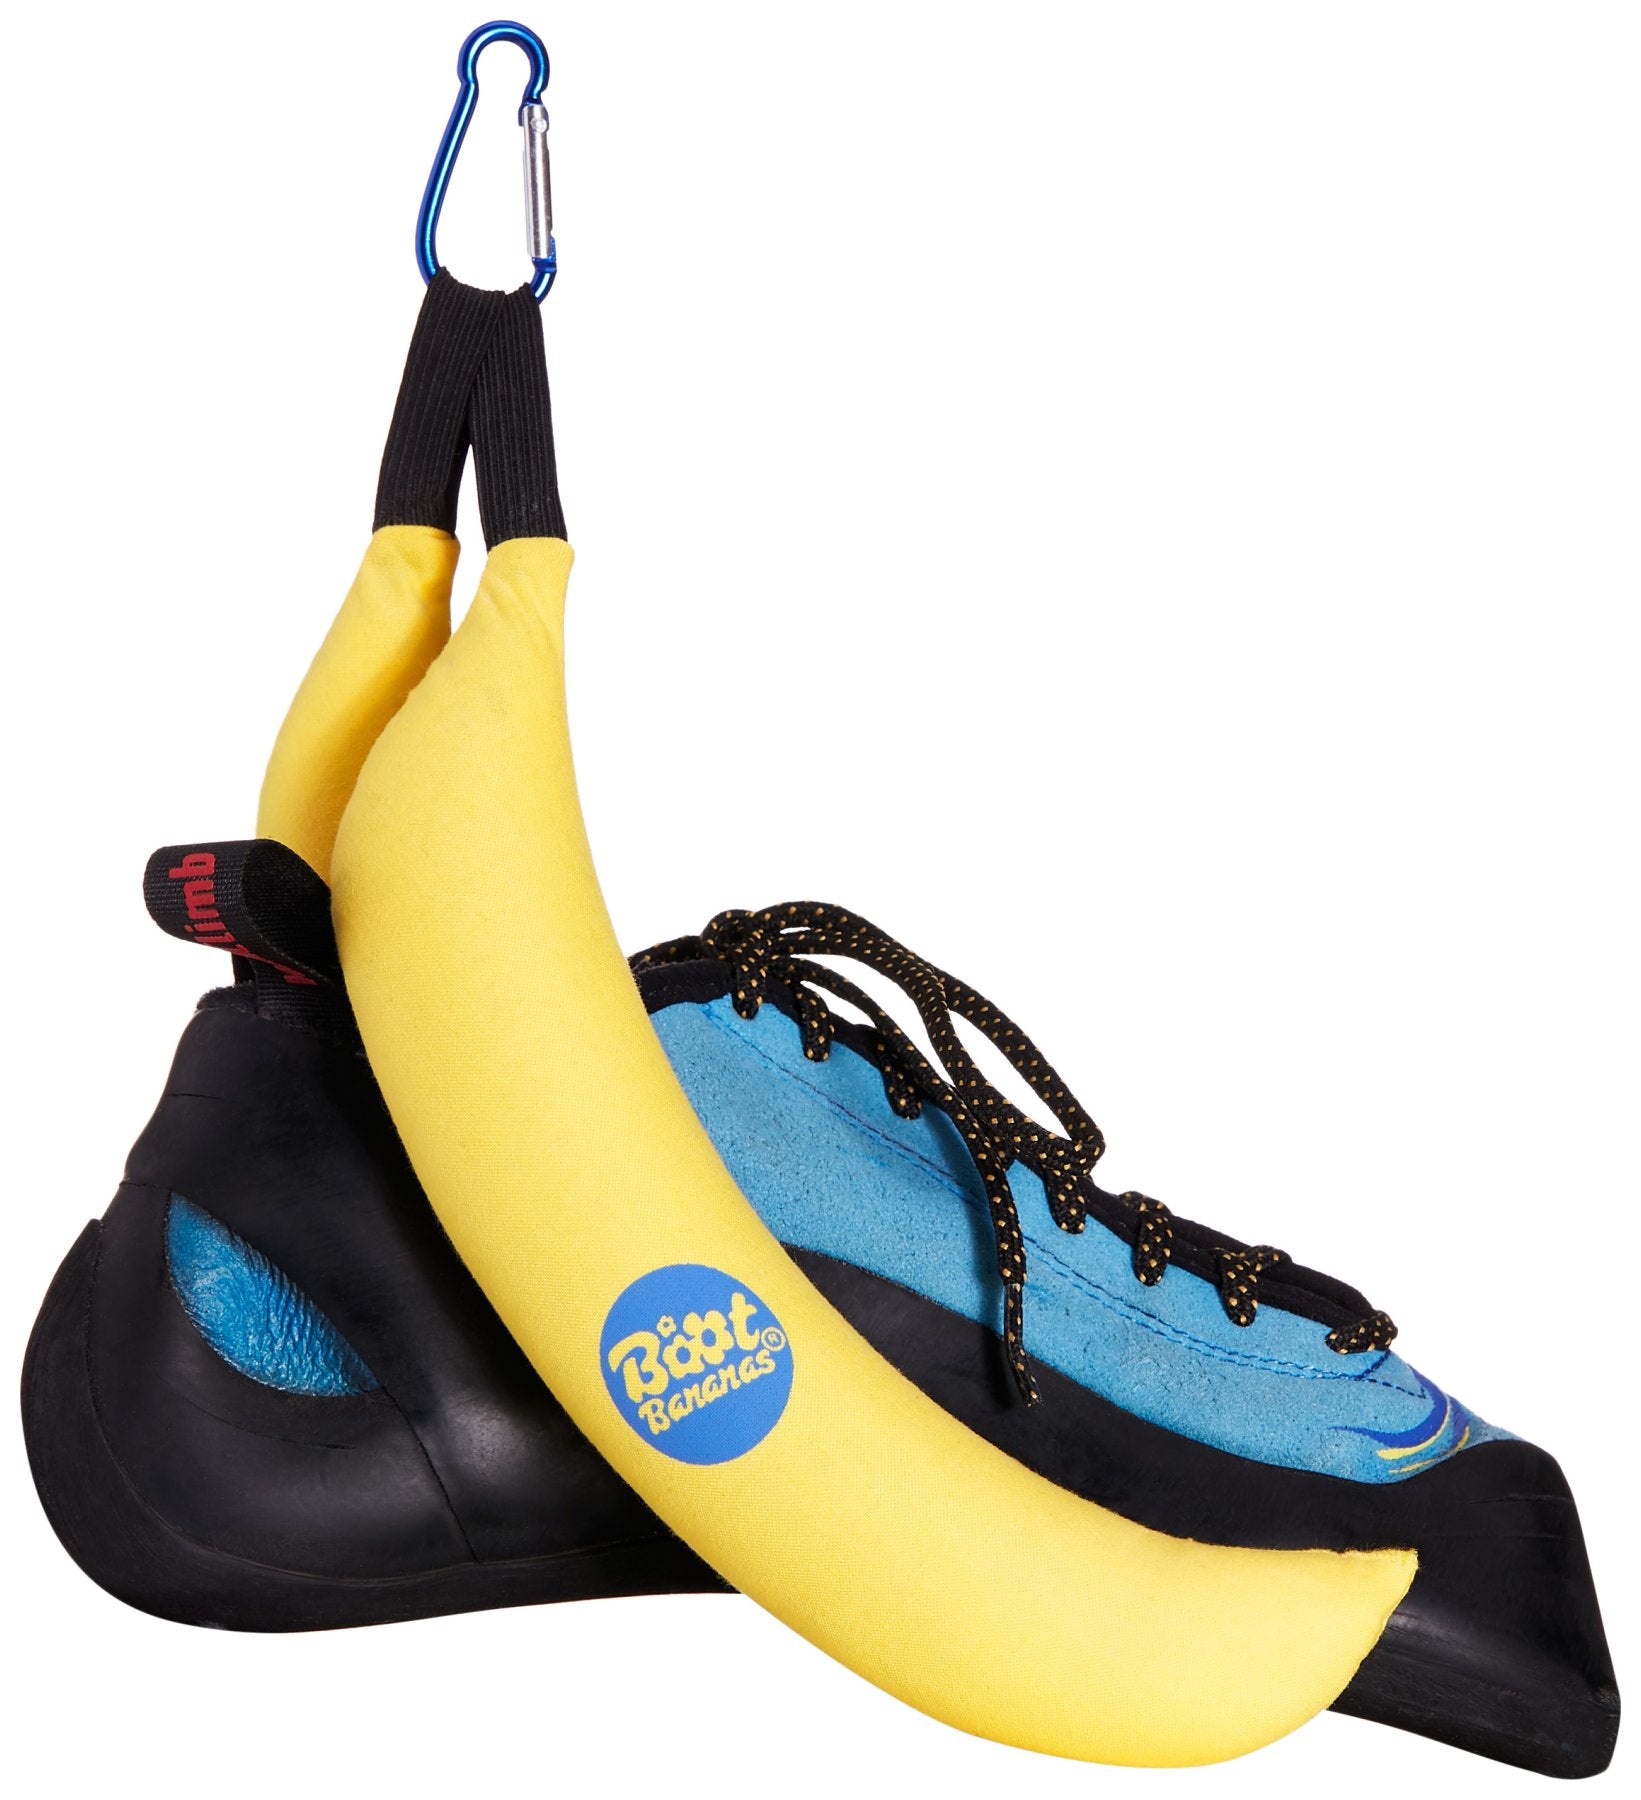 Boot Bananas, schoenverfrissers